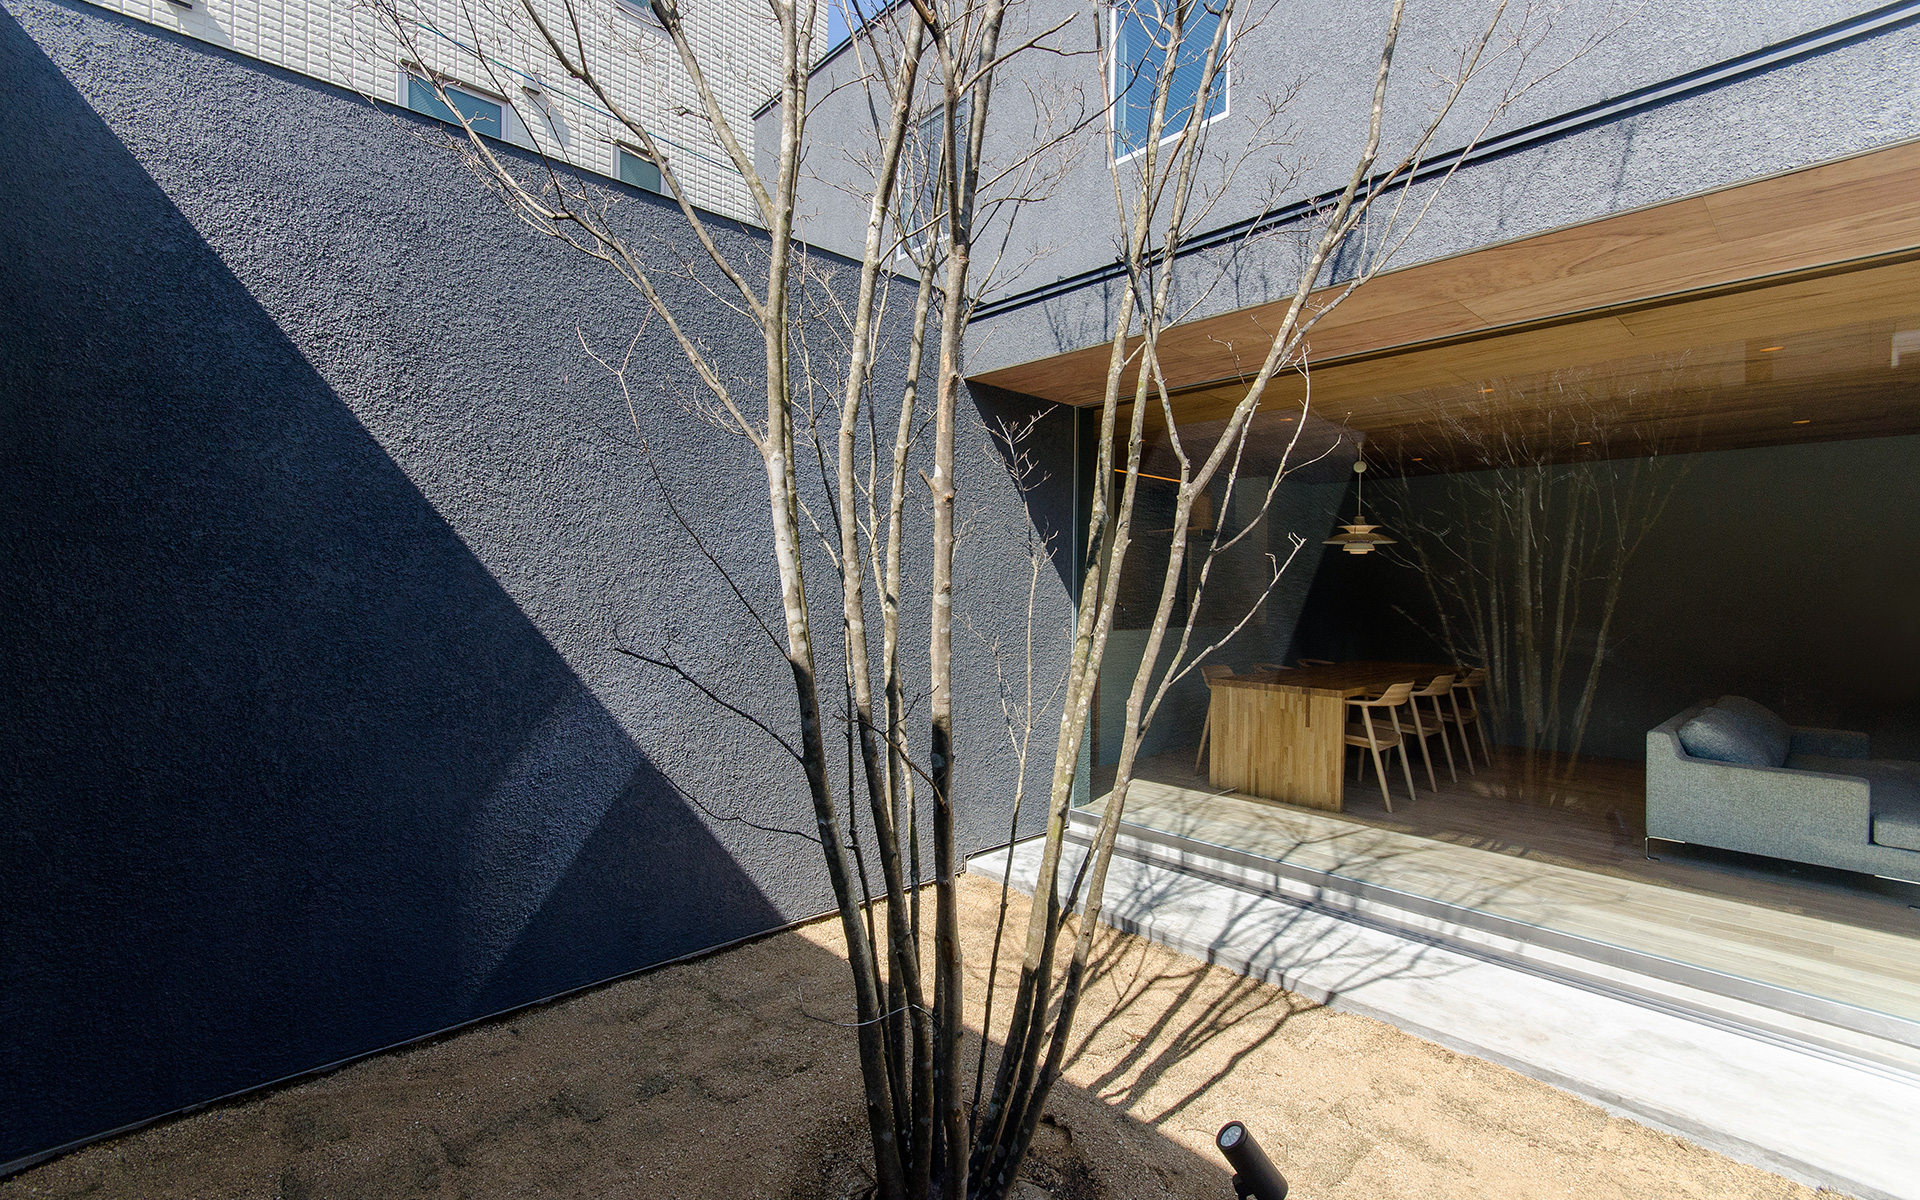 大阪市内に建つ中庭を持つコートハウス。中庭に植えられたヤマボウシ